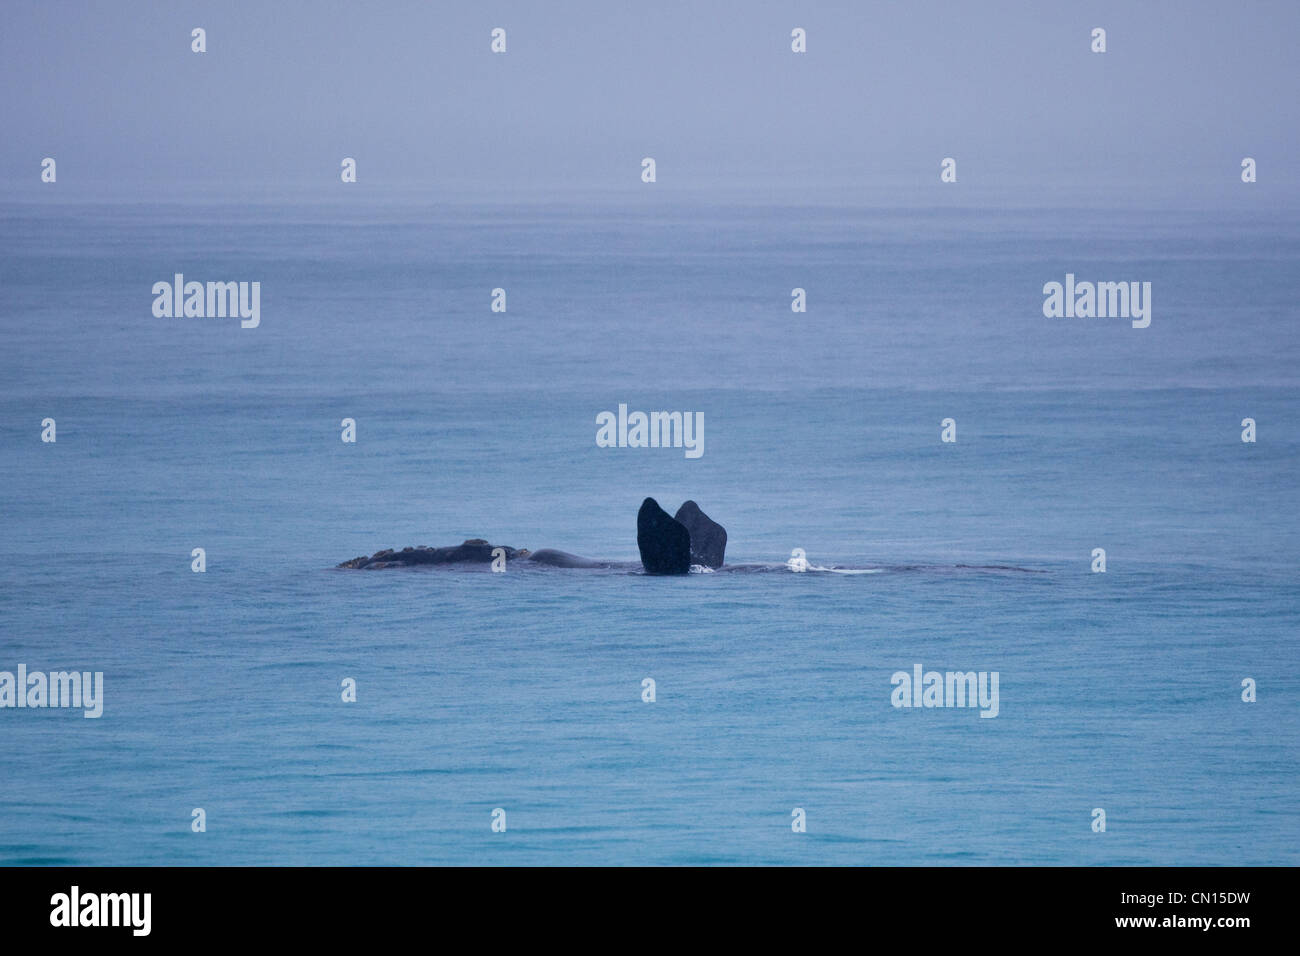 Baleine franche australe. Sleaford Bay. L'Australie du Sud. Banque D'Images